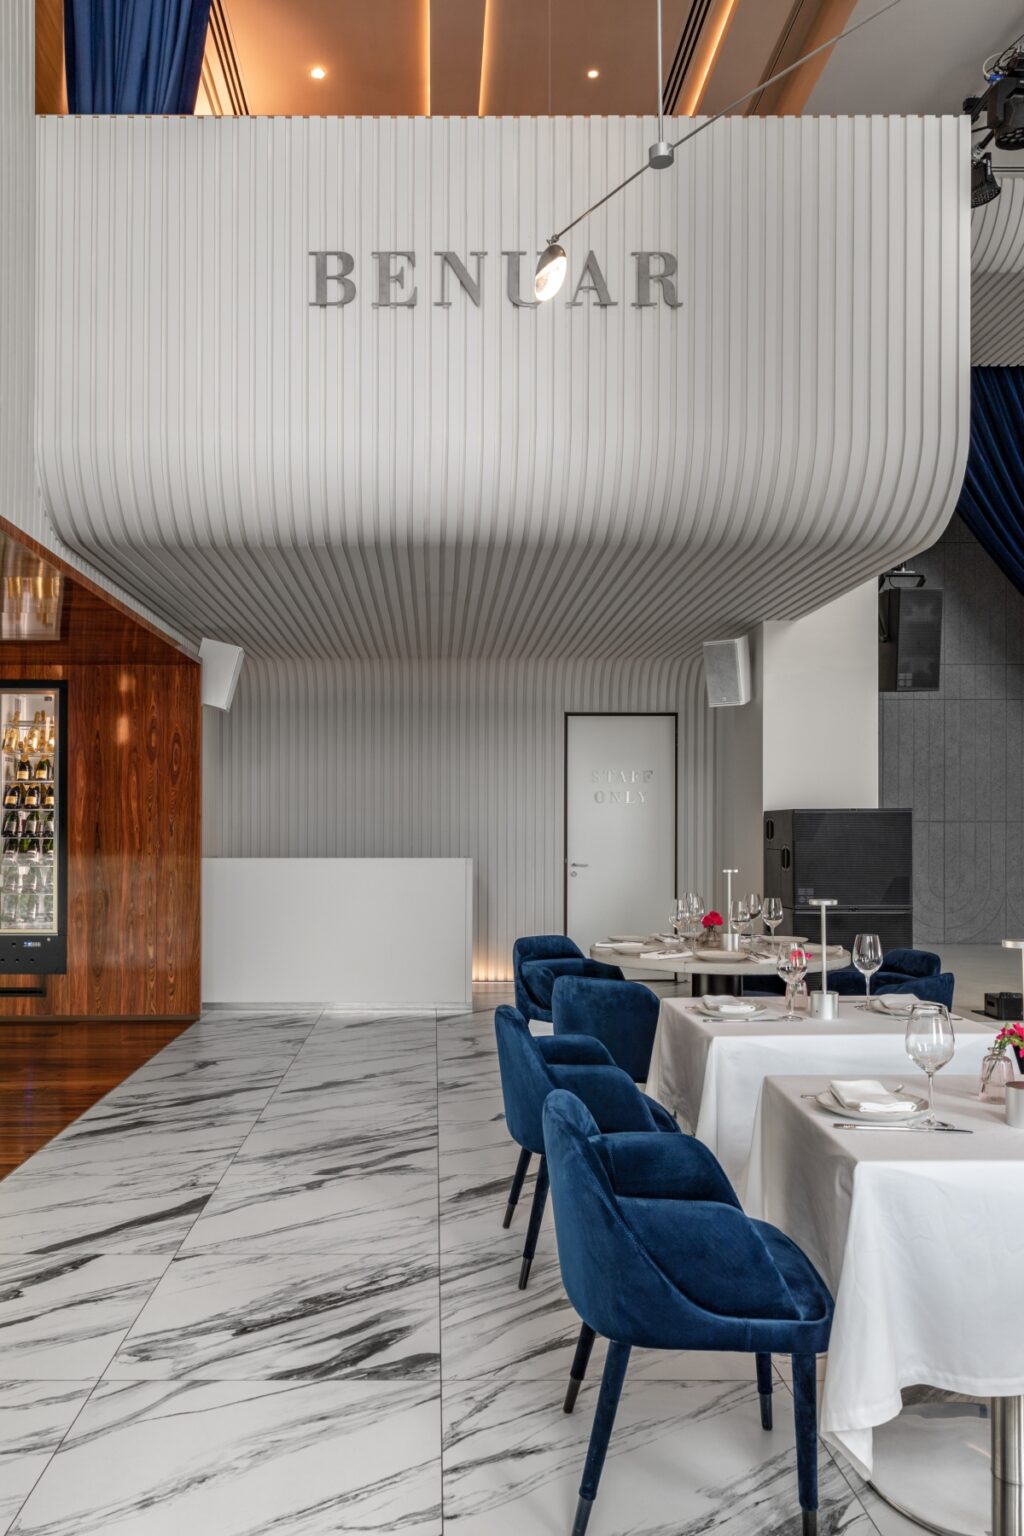 Restoran BENUAR menampilkan keanggunan Art Deco dengan sentuhan Pop Art yang gemerlap